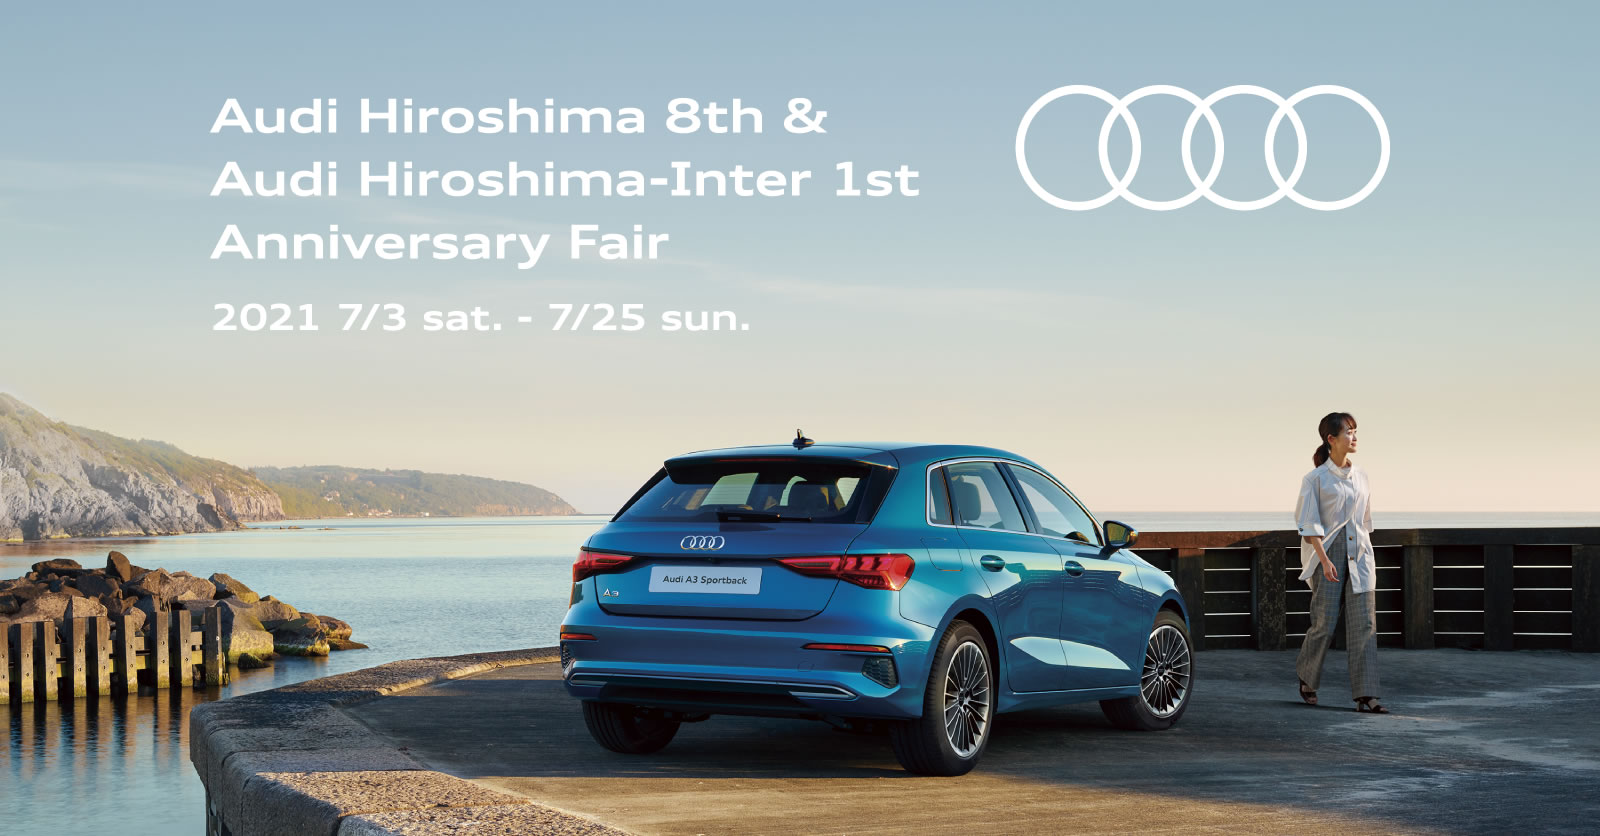 Audi Hiroshima 8th & Audi Hiroshima-Inter 1st Anniversary Fair